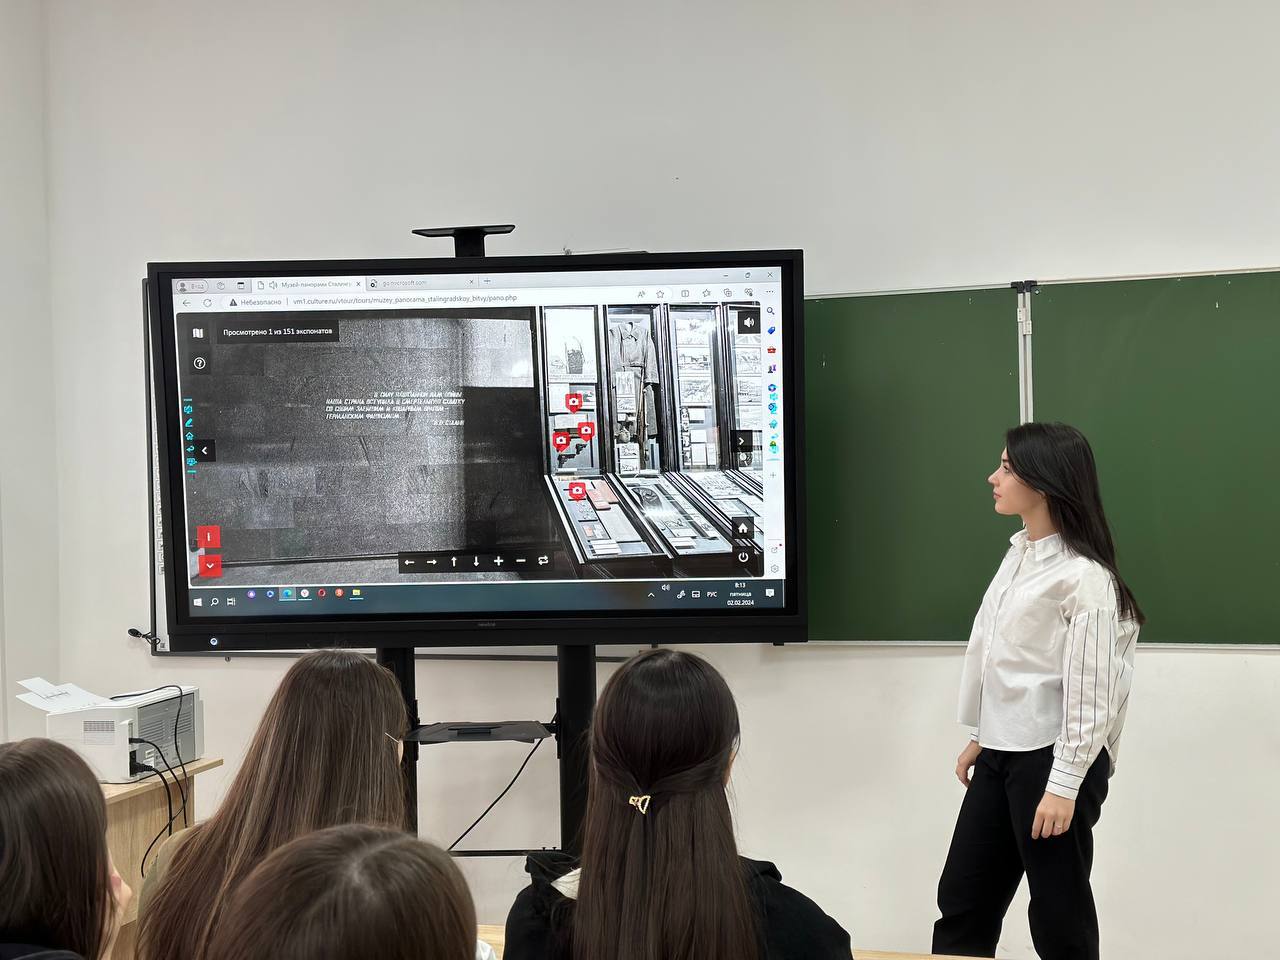 Виртуальная экскурсия  в музей - панораму «Сталинградская битва».